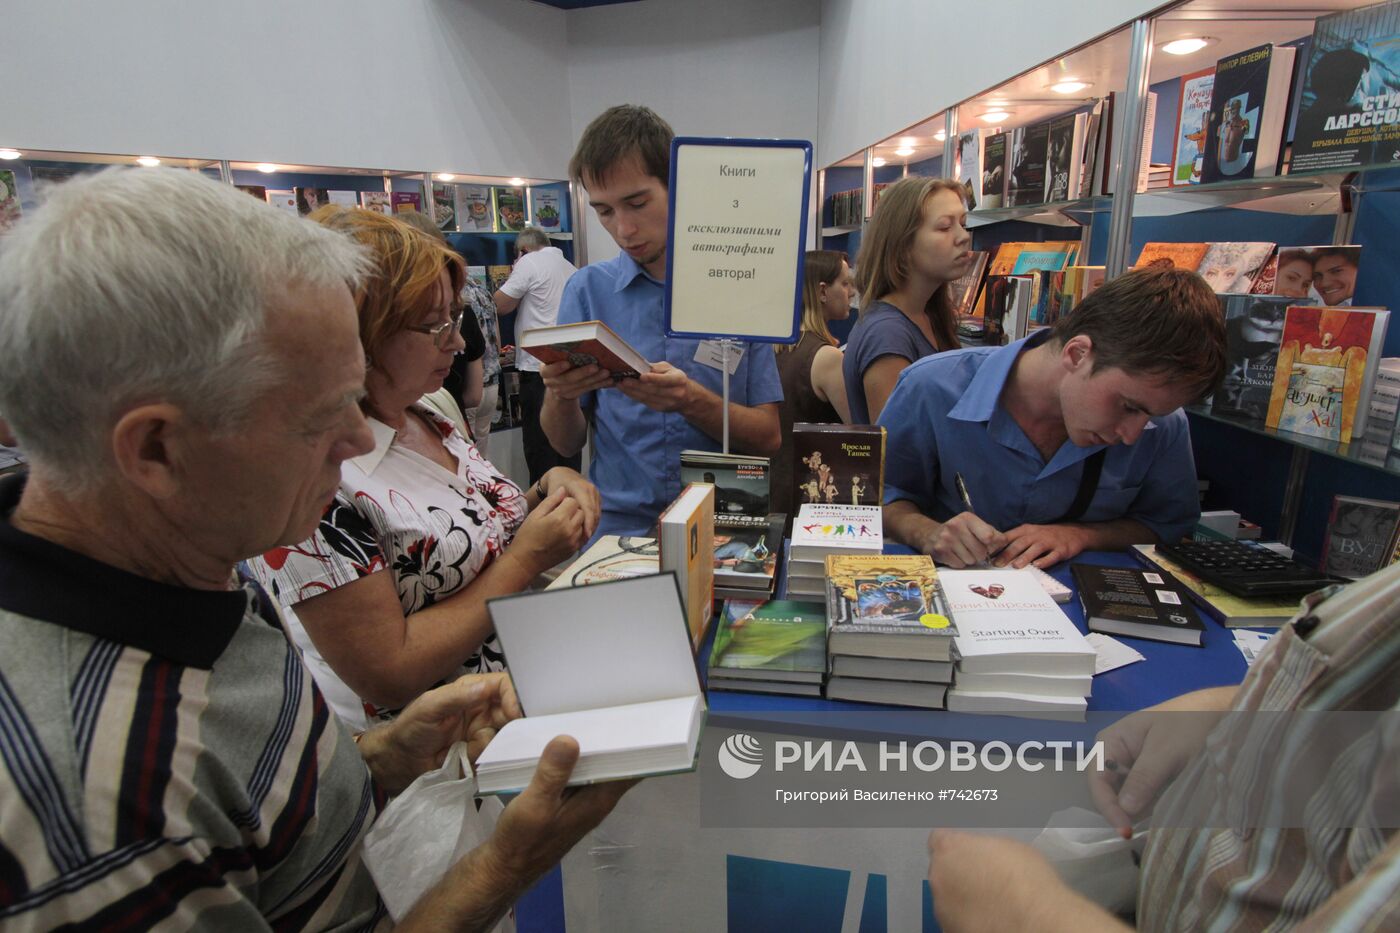 Посетители на VI Киевской книжной ярмарке